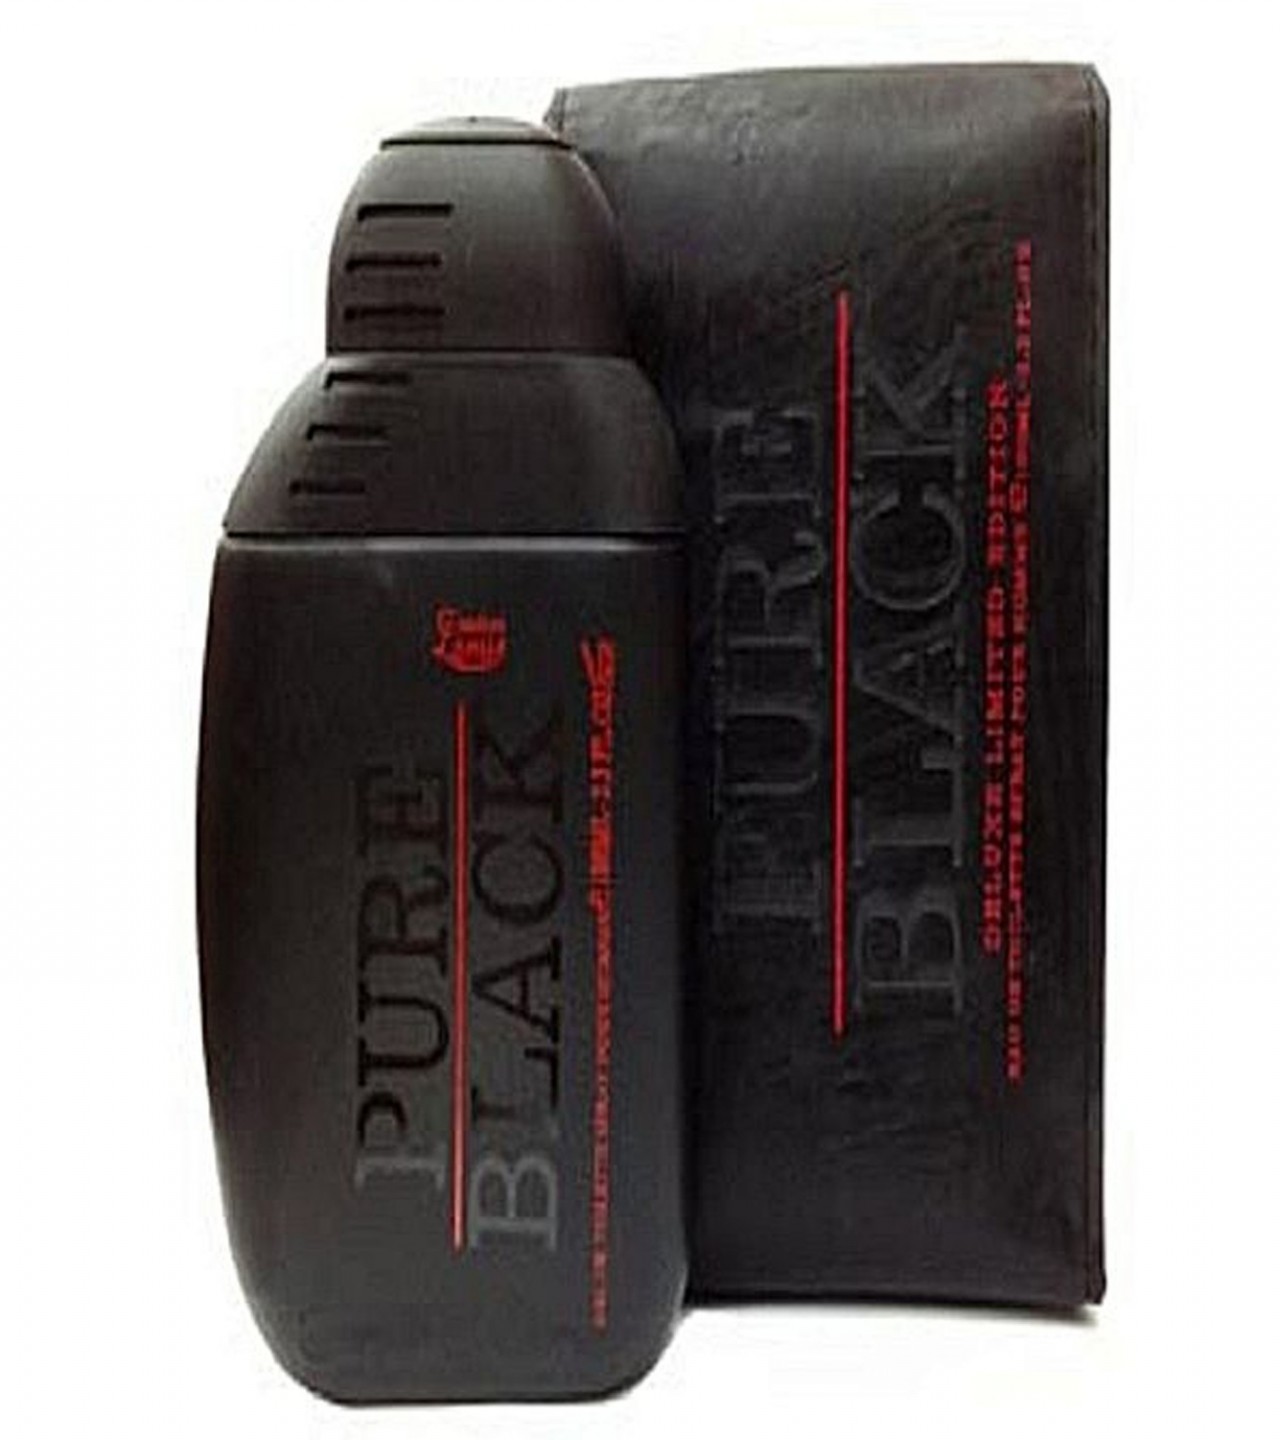 Creation Lamis Pure Black Perfume for Men - Eau de Toilette - 25 ml